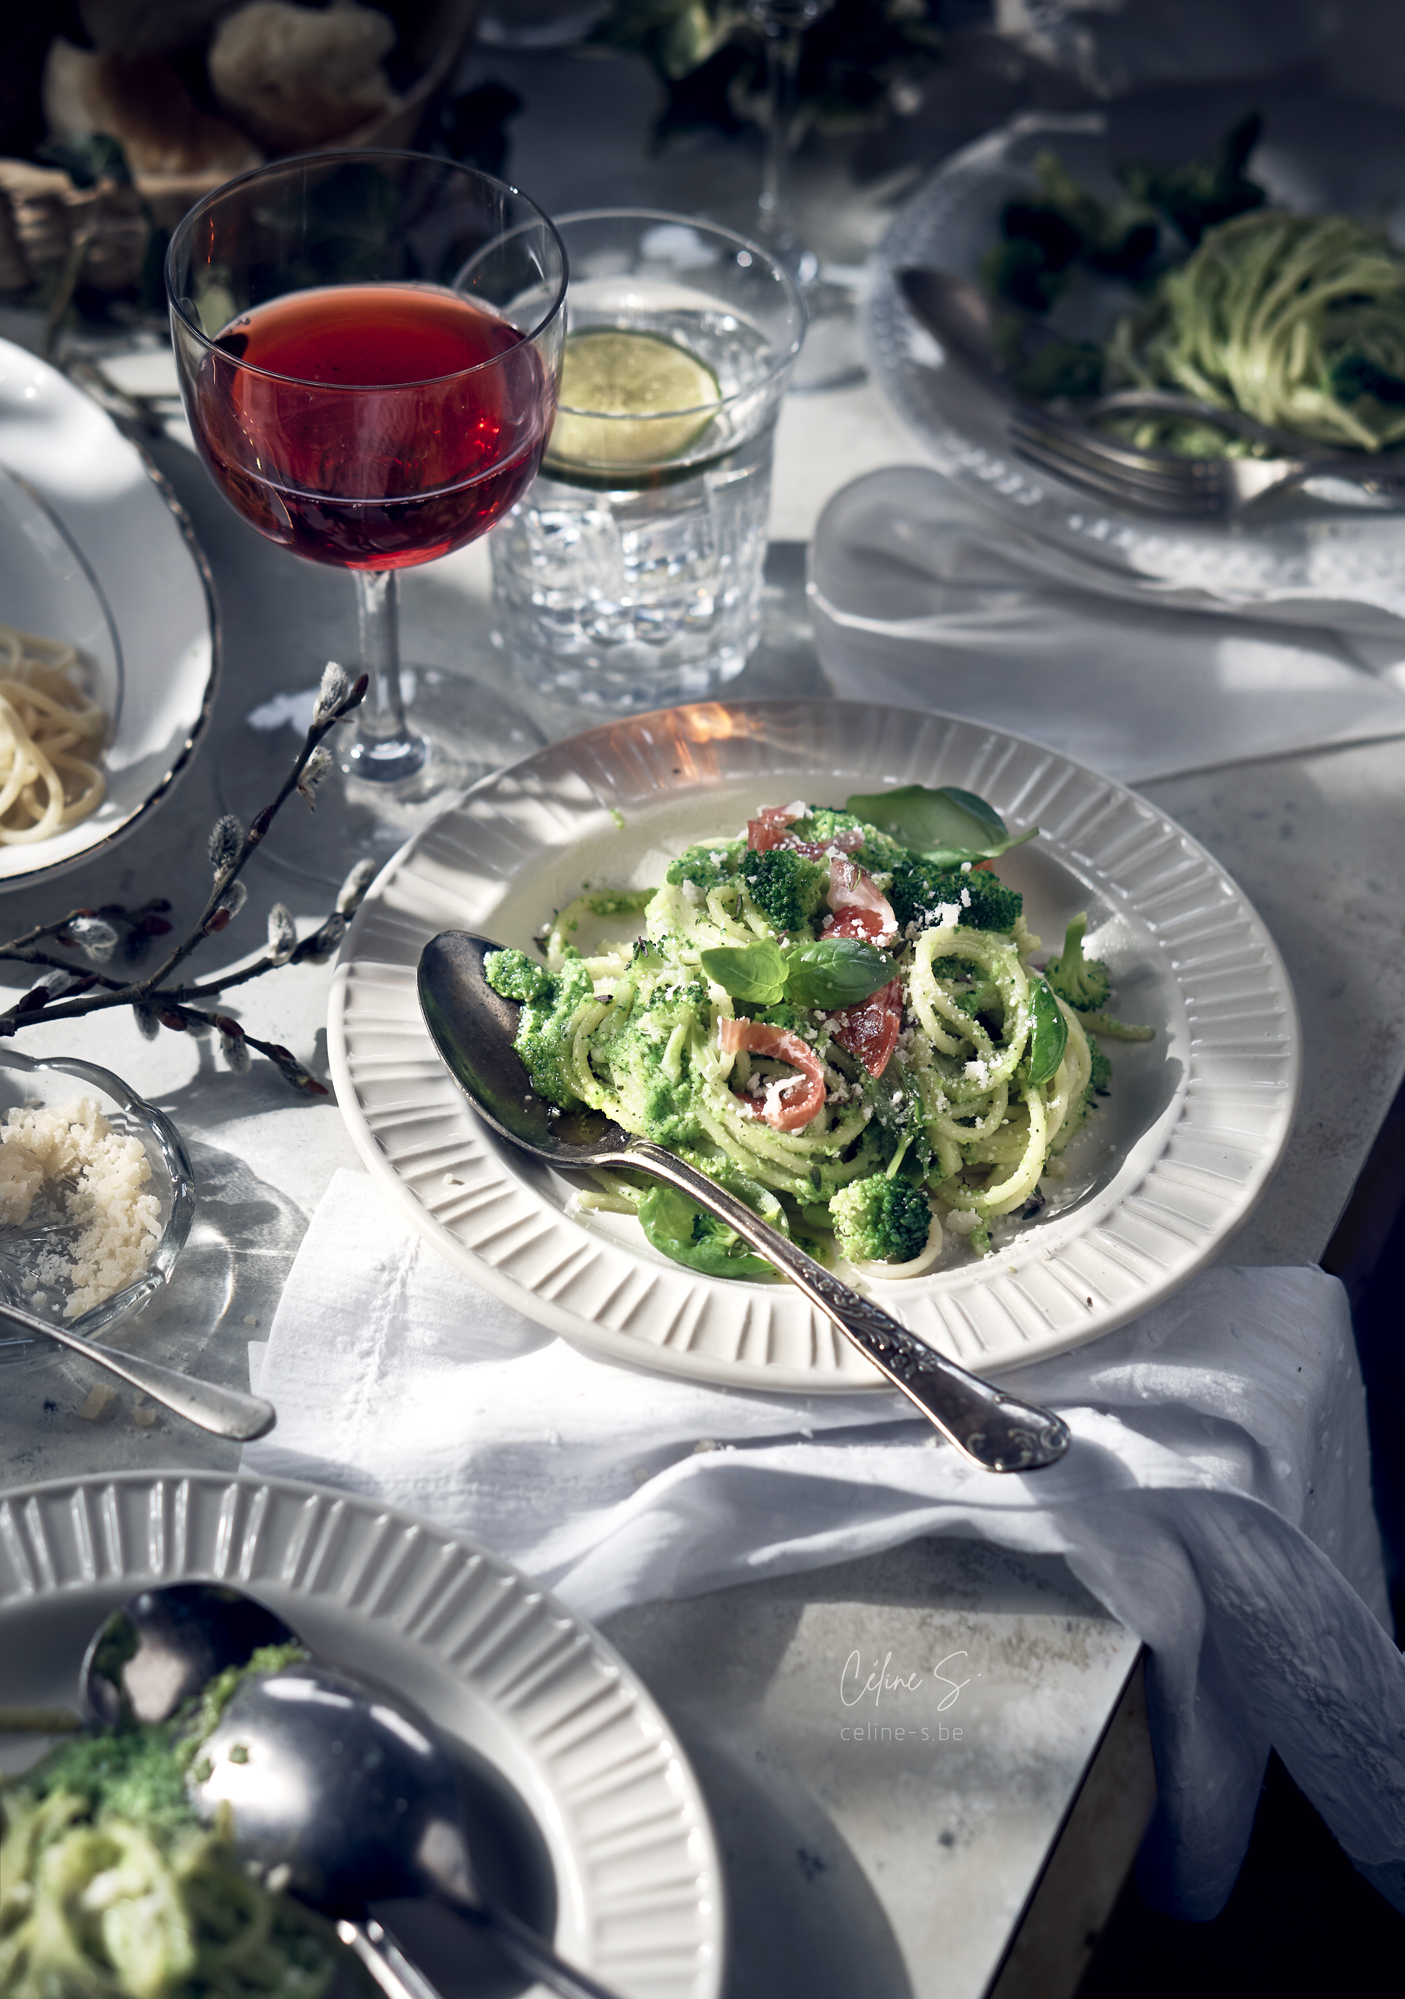 Céline Stiévenard - food photo - photographe et styliste culinaire - photo repas d'été italien - pates pesto et coppa - Liège, Belgique